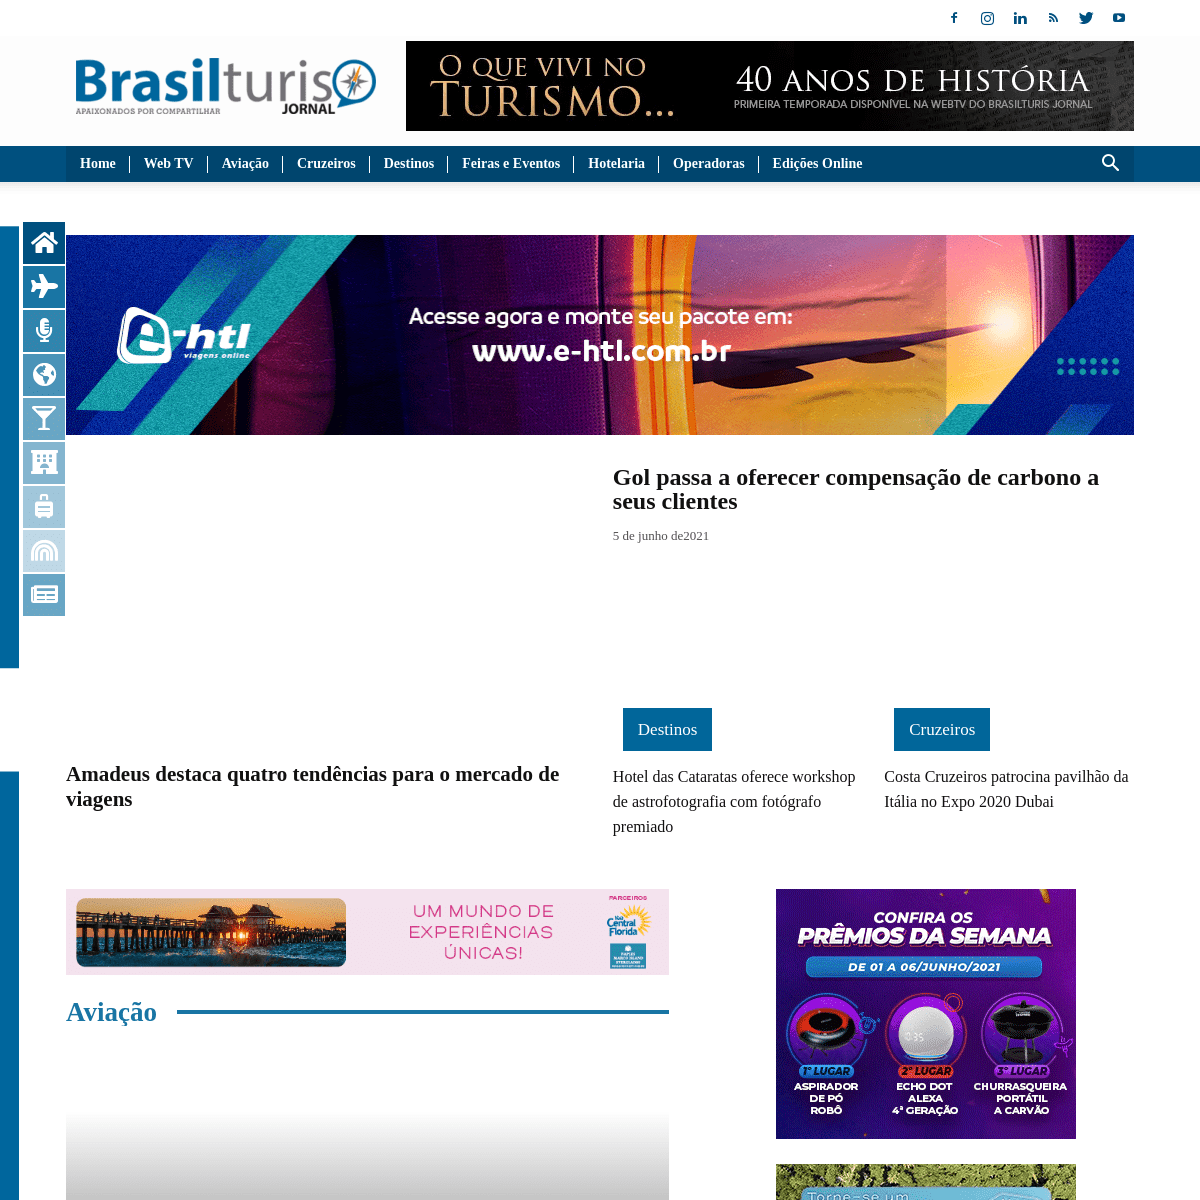 A complete backup of https://brasilturis.com.br